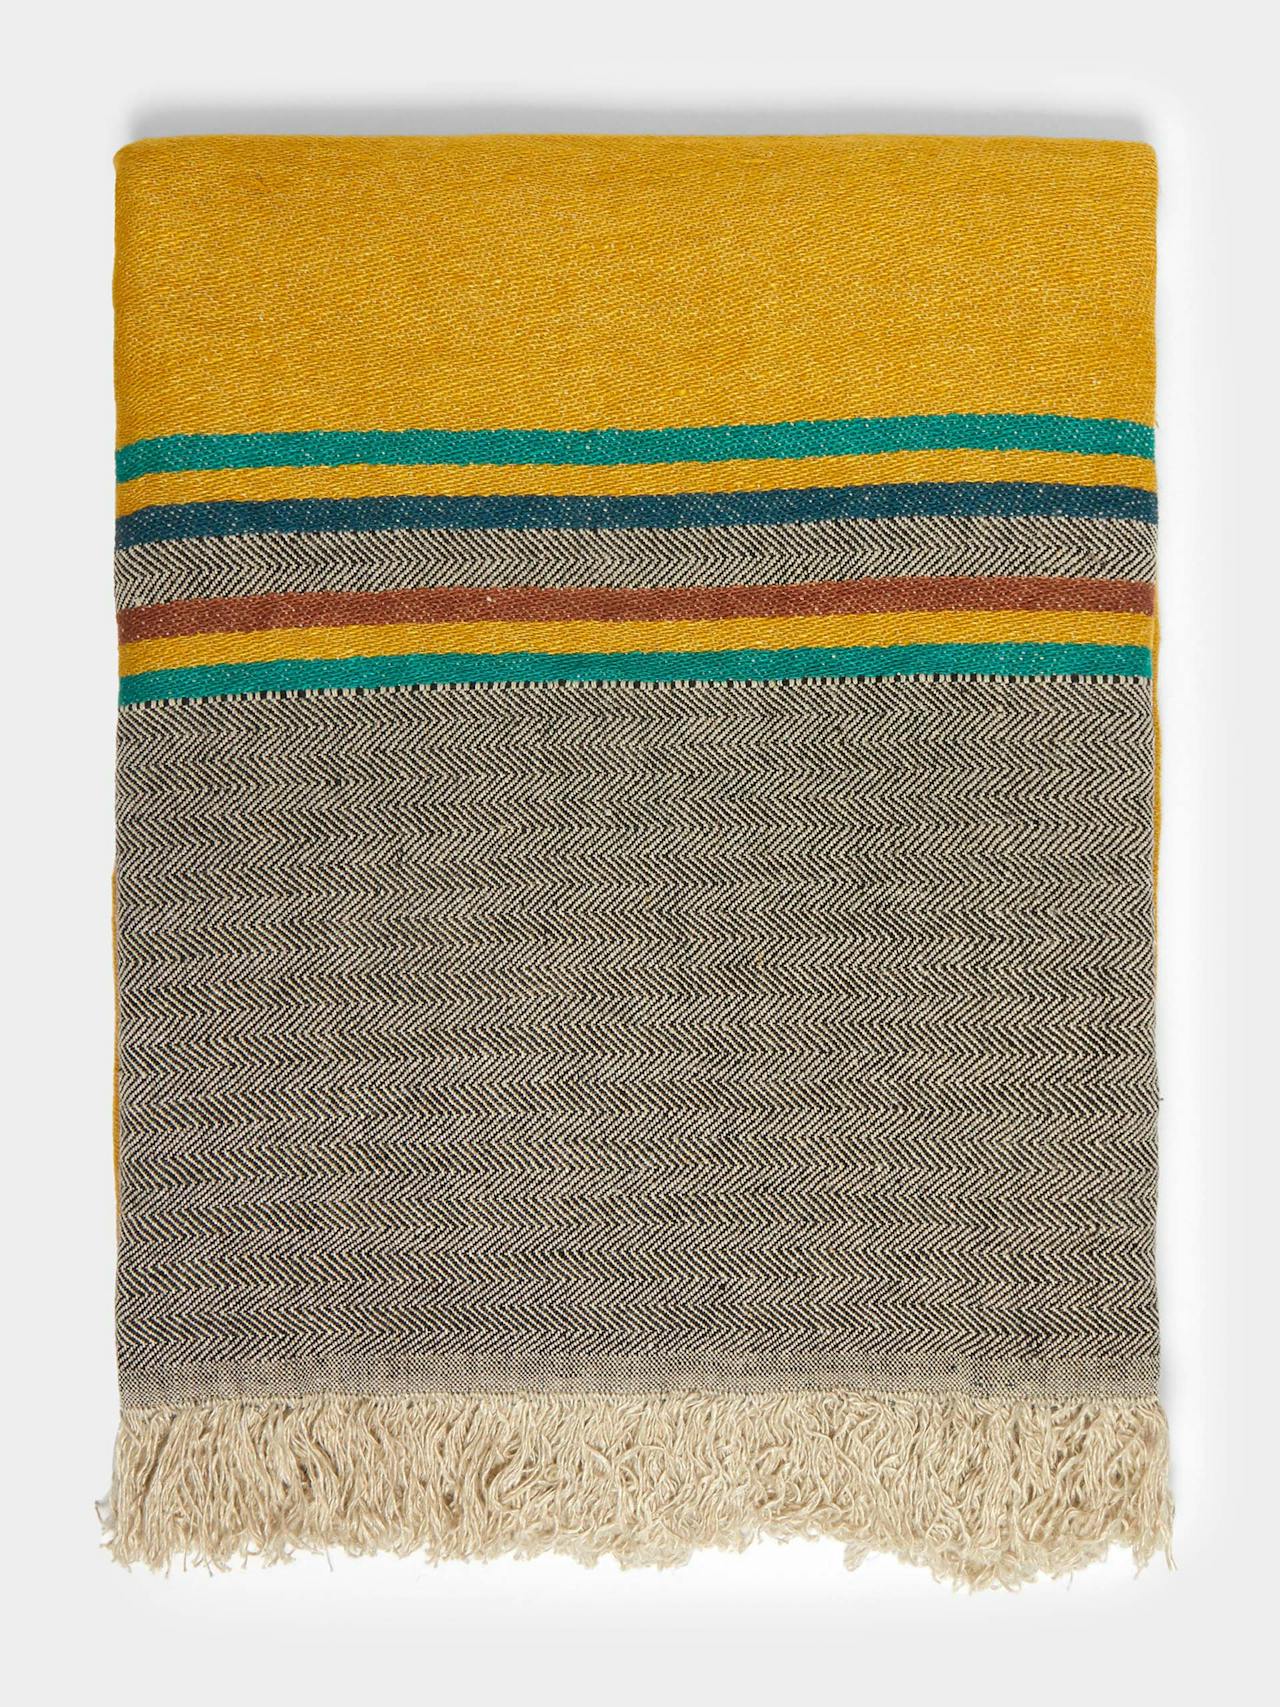 Sequoia stripe Belgian linen towel